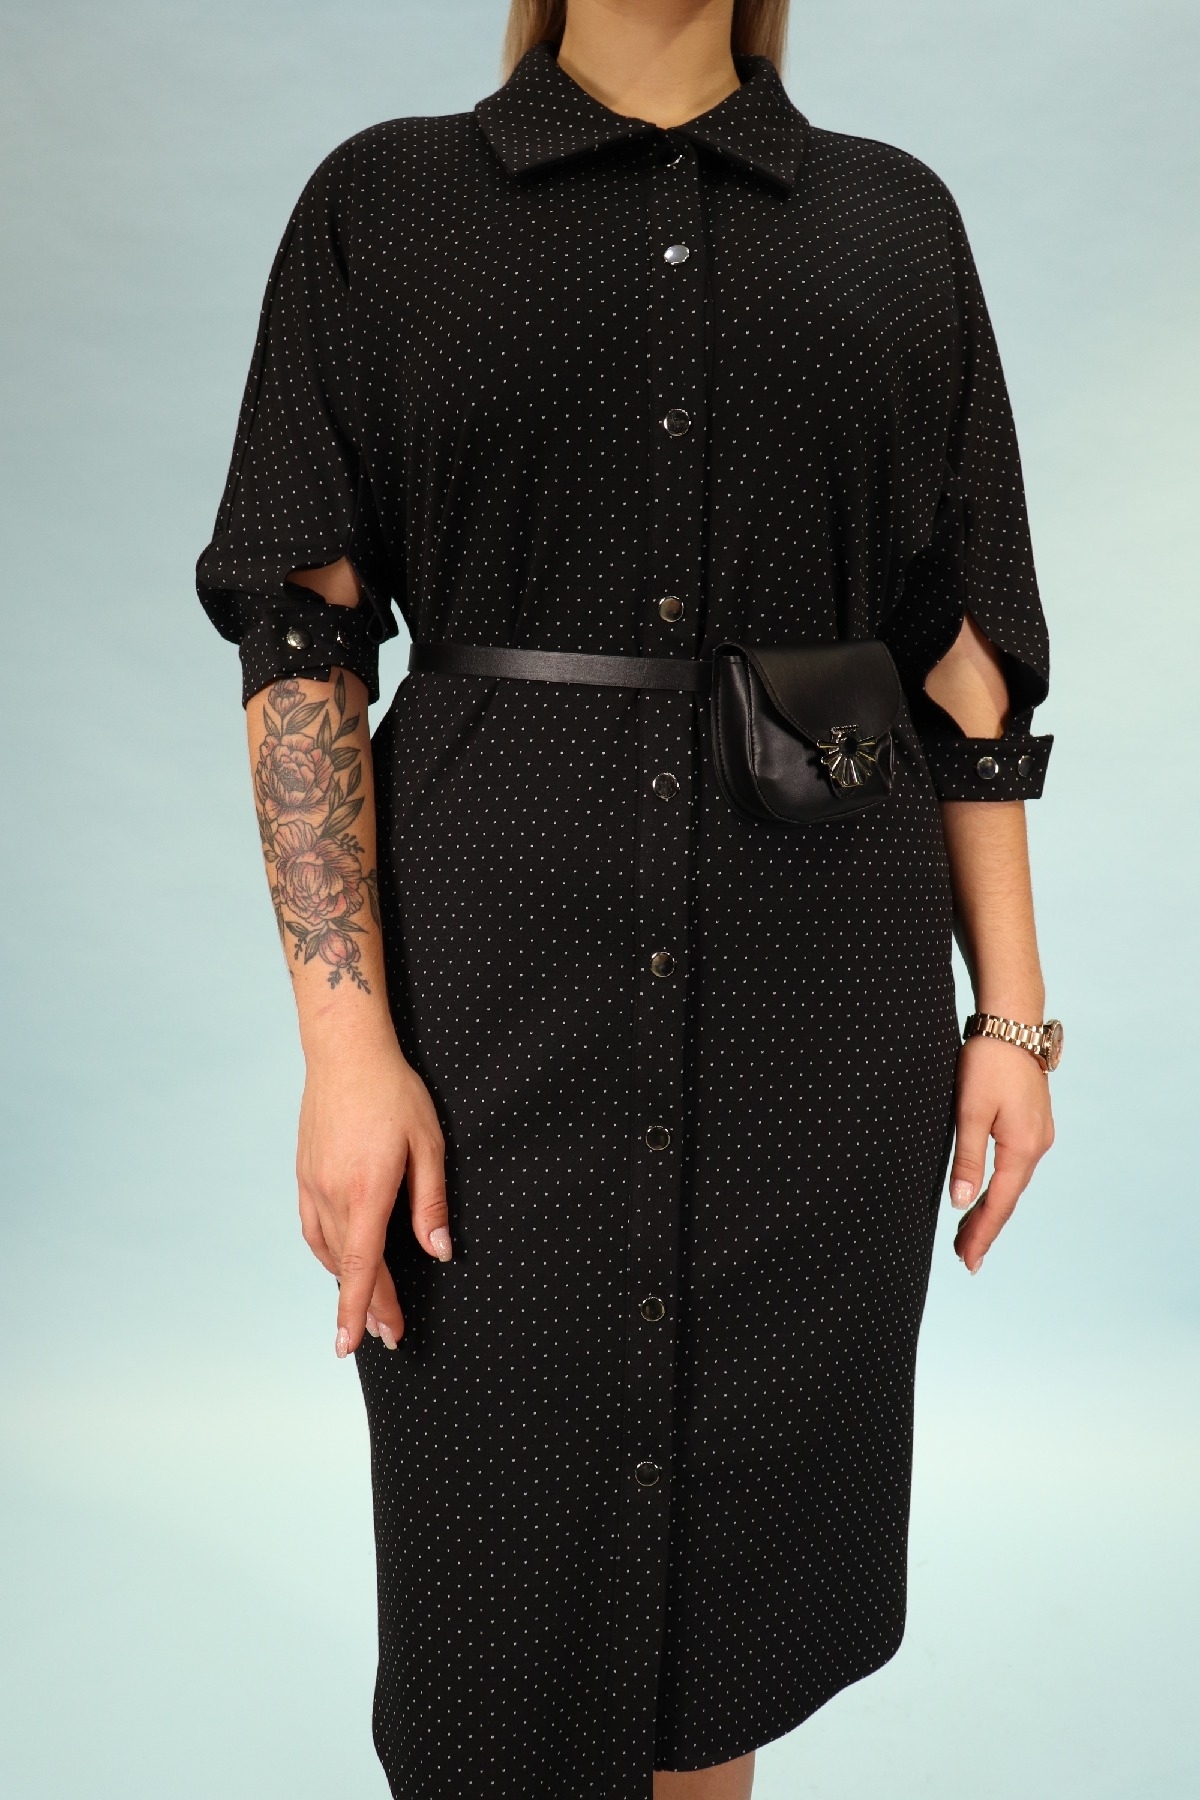 büyük beden siyah şık önü düğmeli kemeri cep detaylı gömlek tarzı elbise 